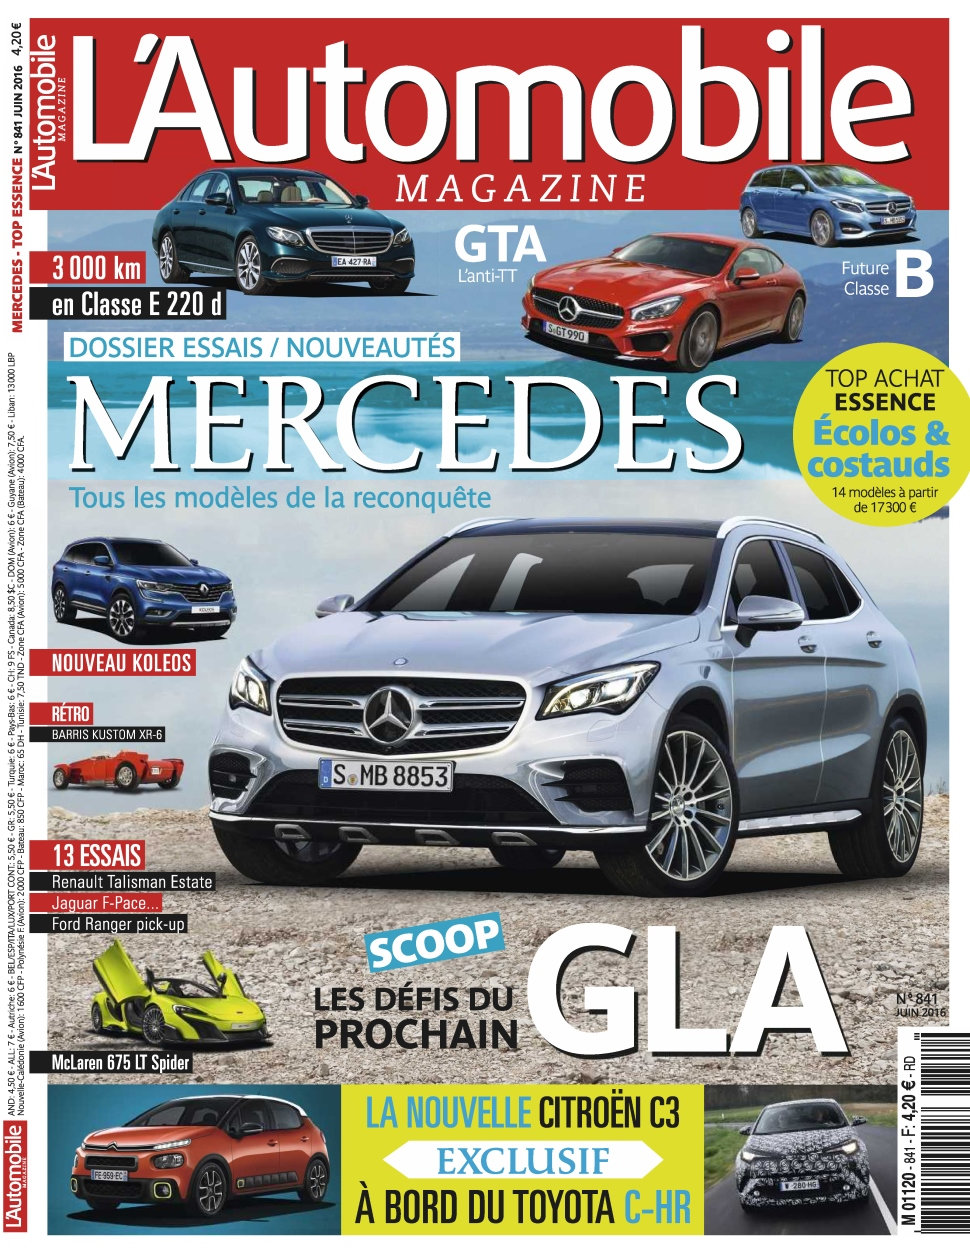 L'Automobile magazine N°841 - Juin 2016